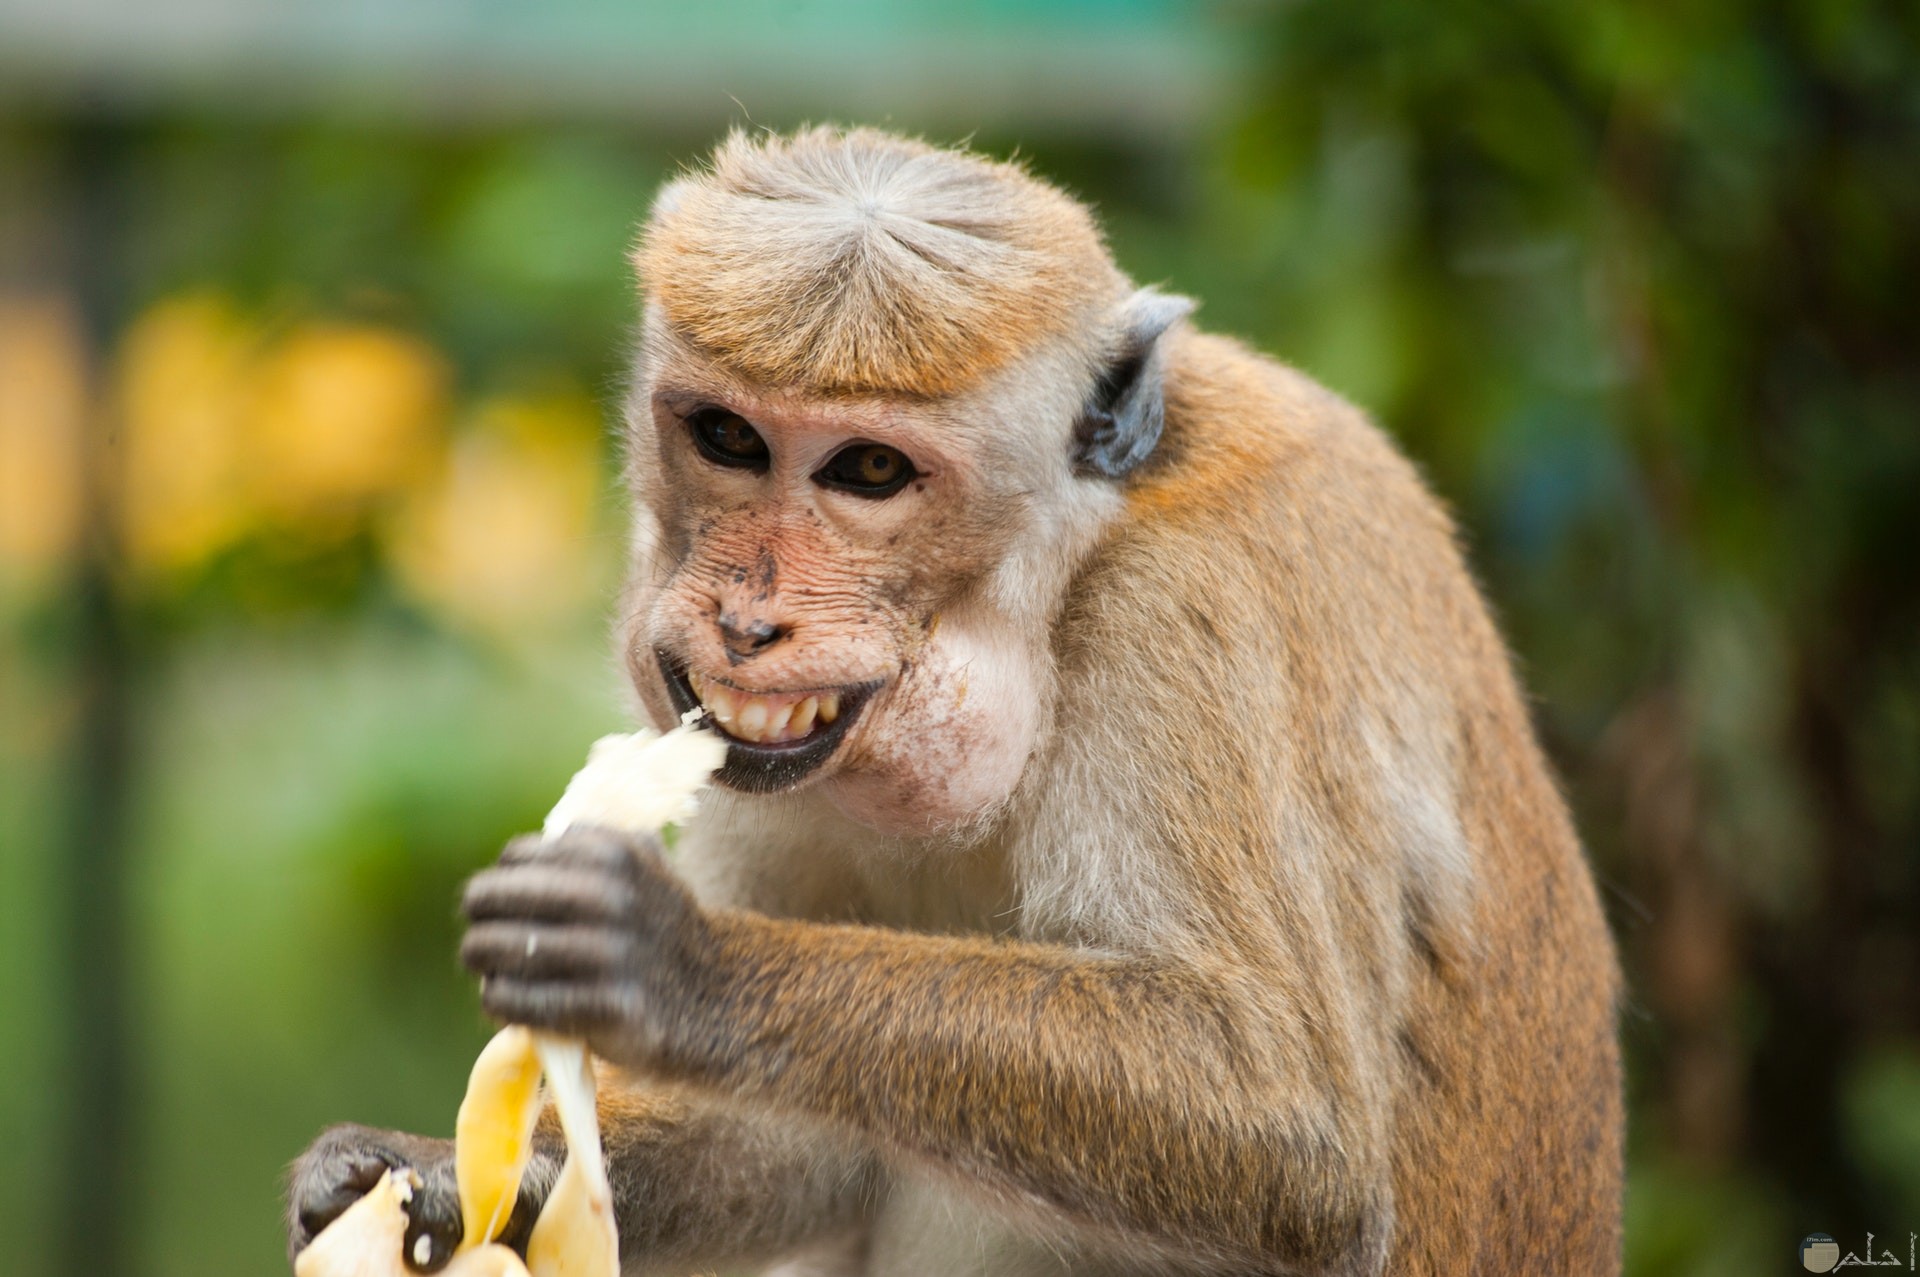 صورة مضحكة جدا لقرد وتعابير وجهه وهو يأكل الموزة